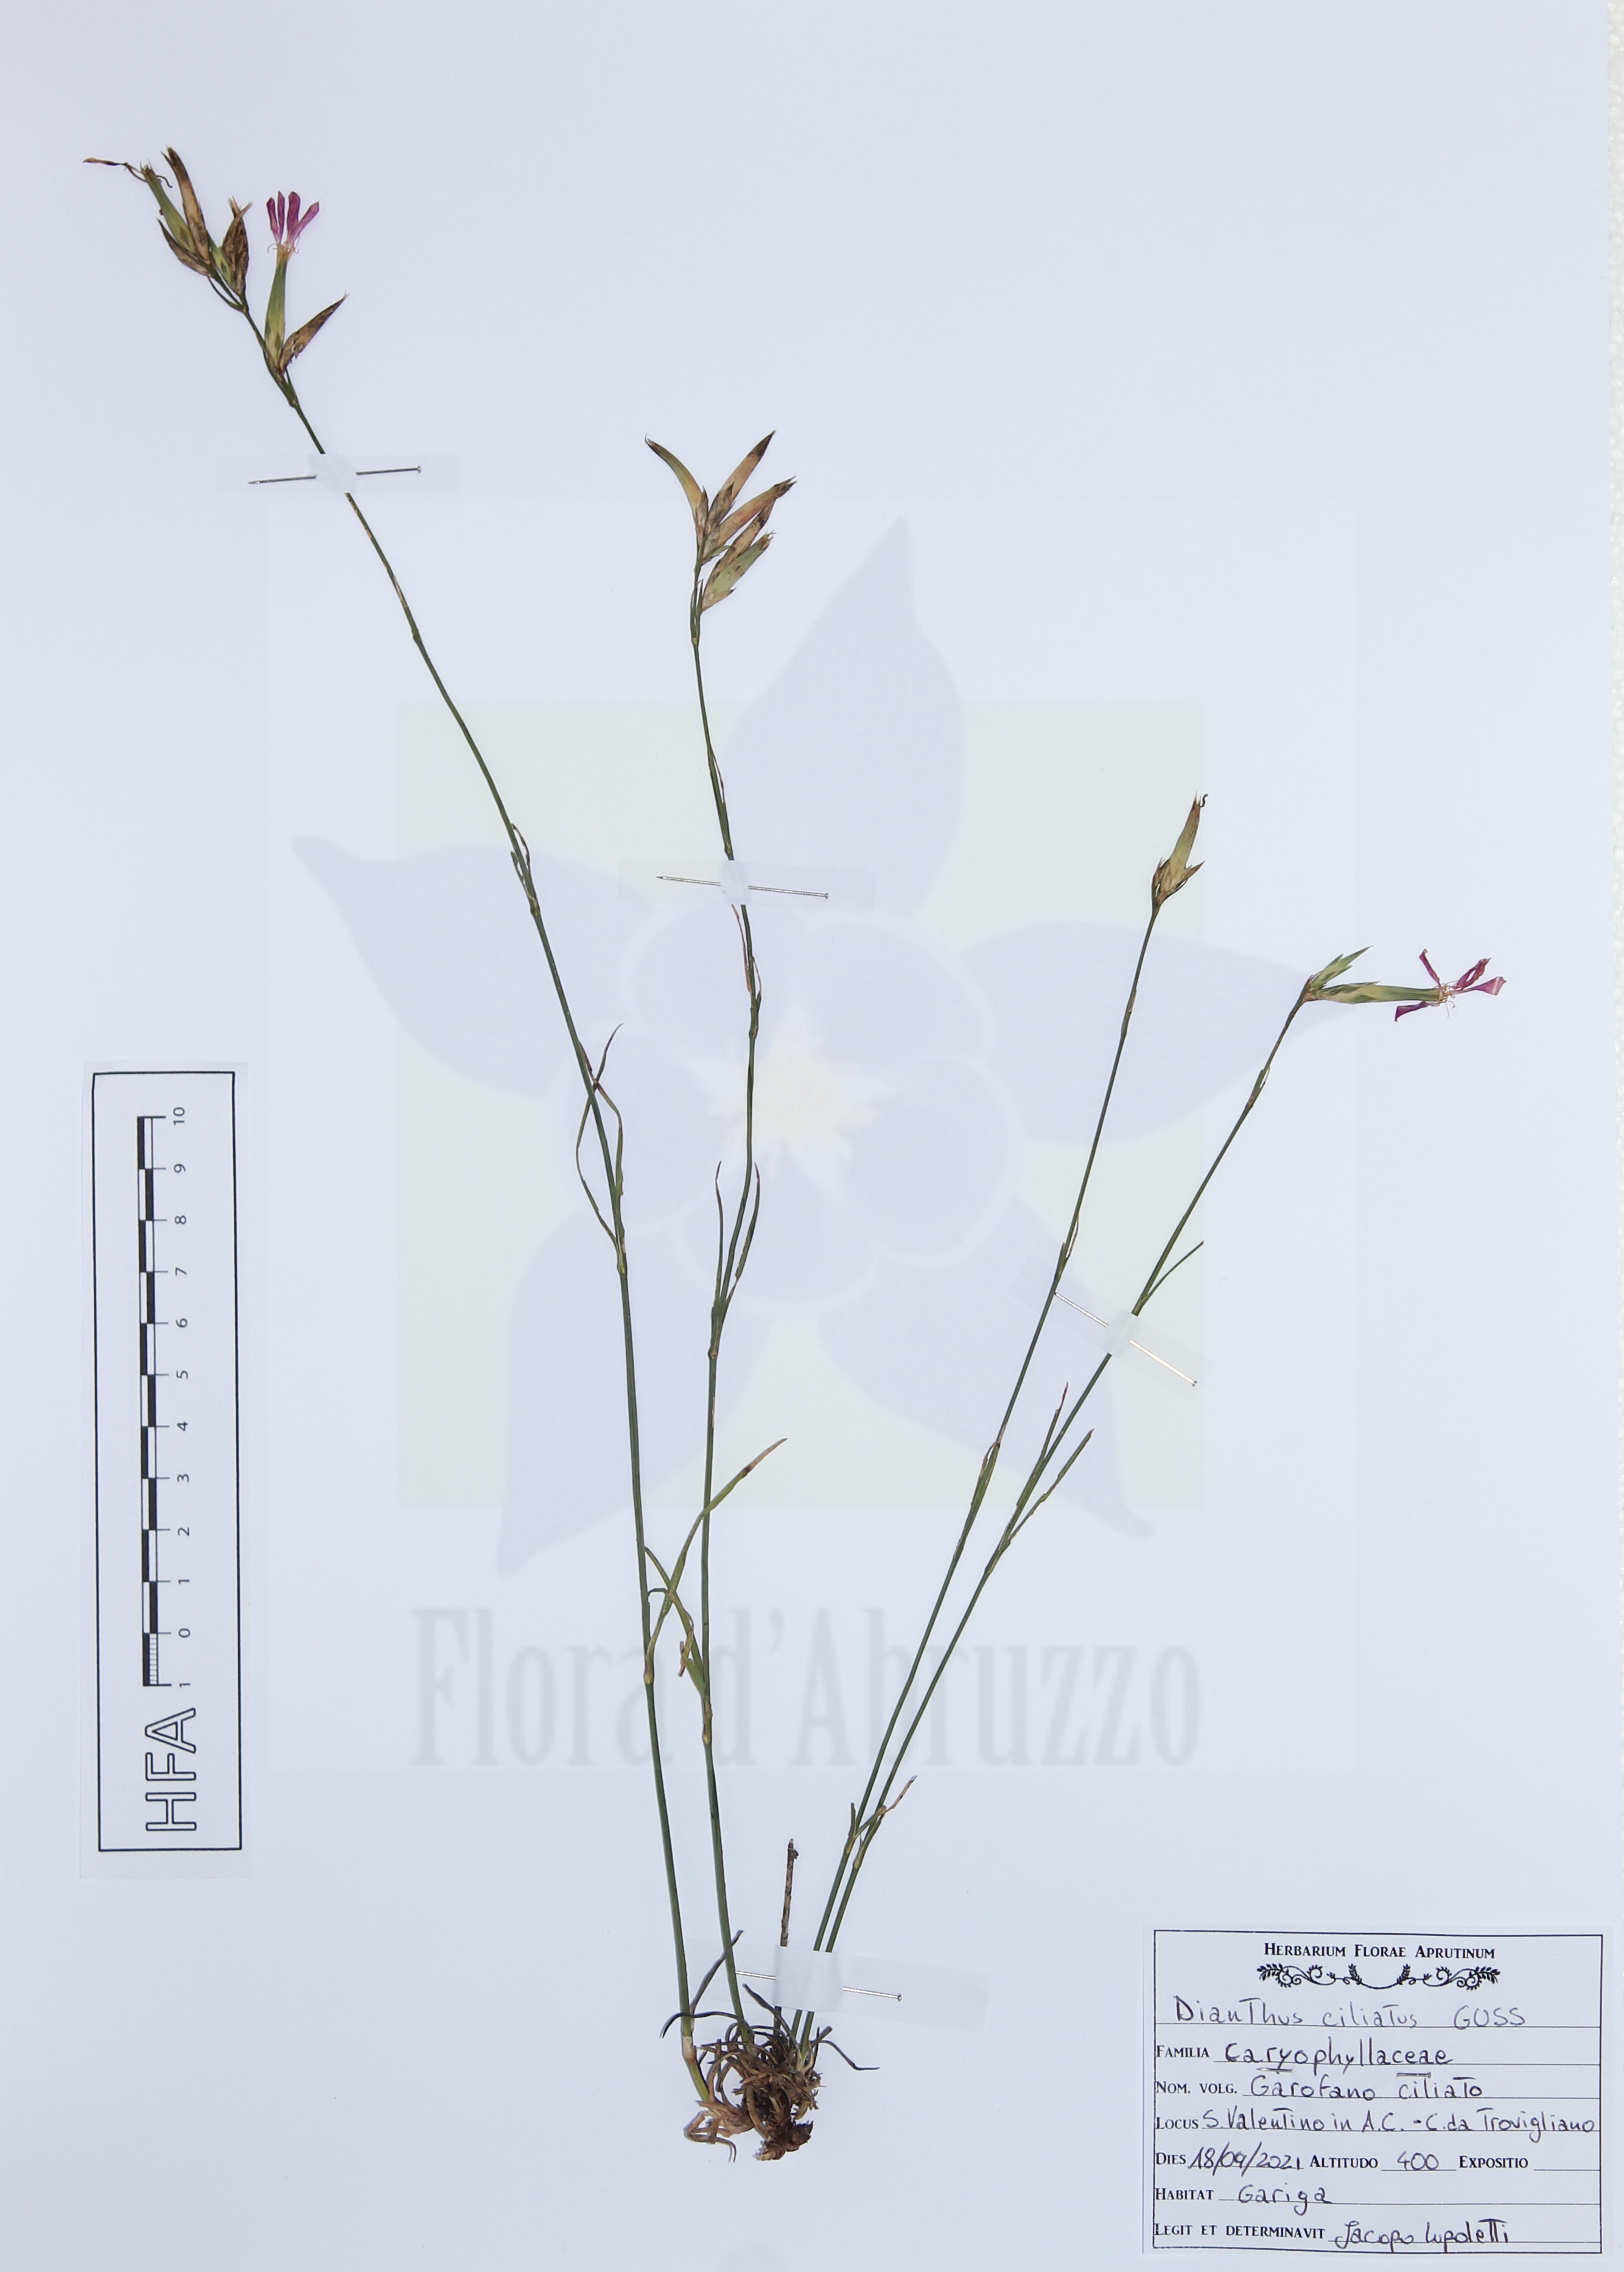 Dianthus ciliatus Guss. subsp. ciliatus